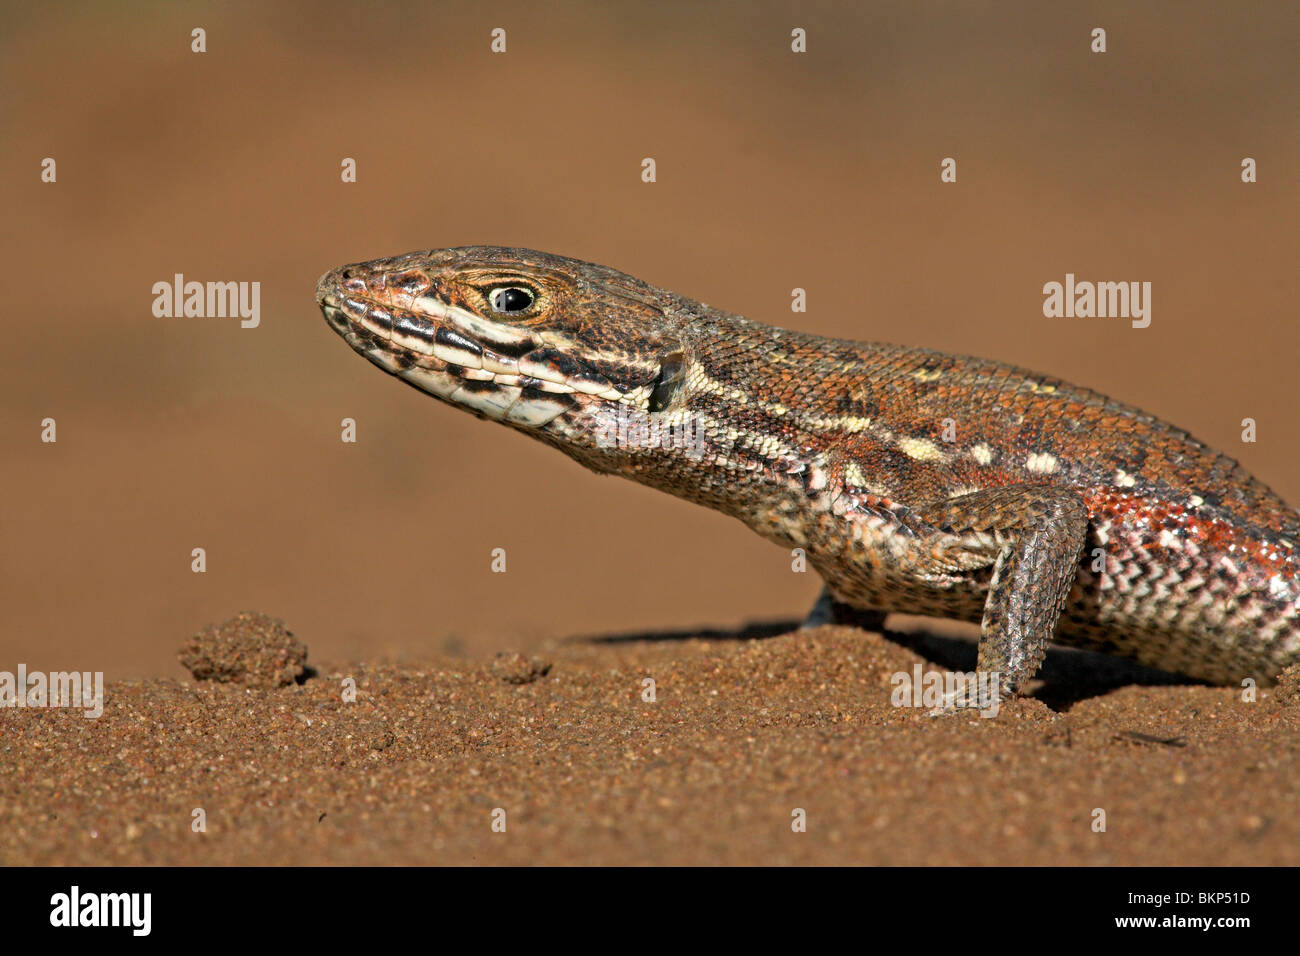 Ritratto di estremamente veloce ruvida comune scala lizard sulla sabbia Foto Stock